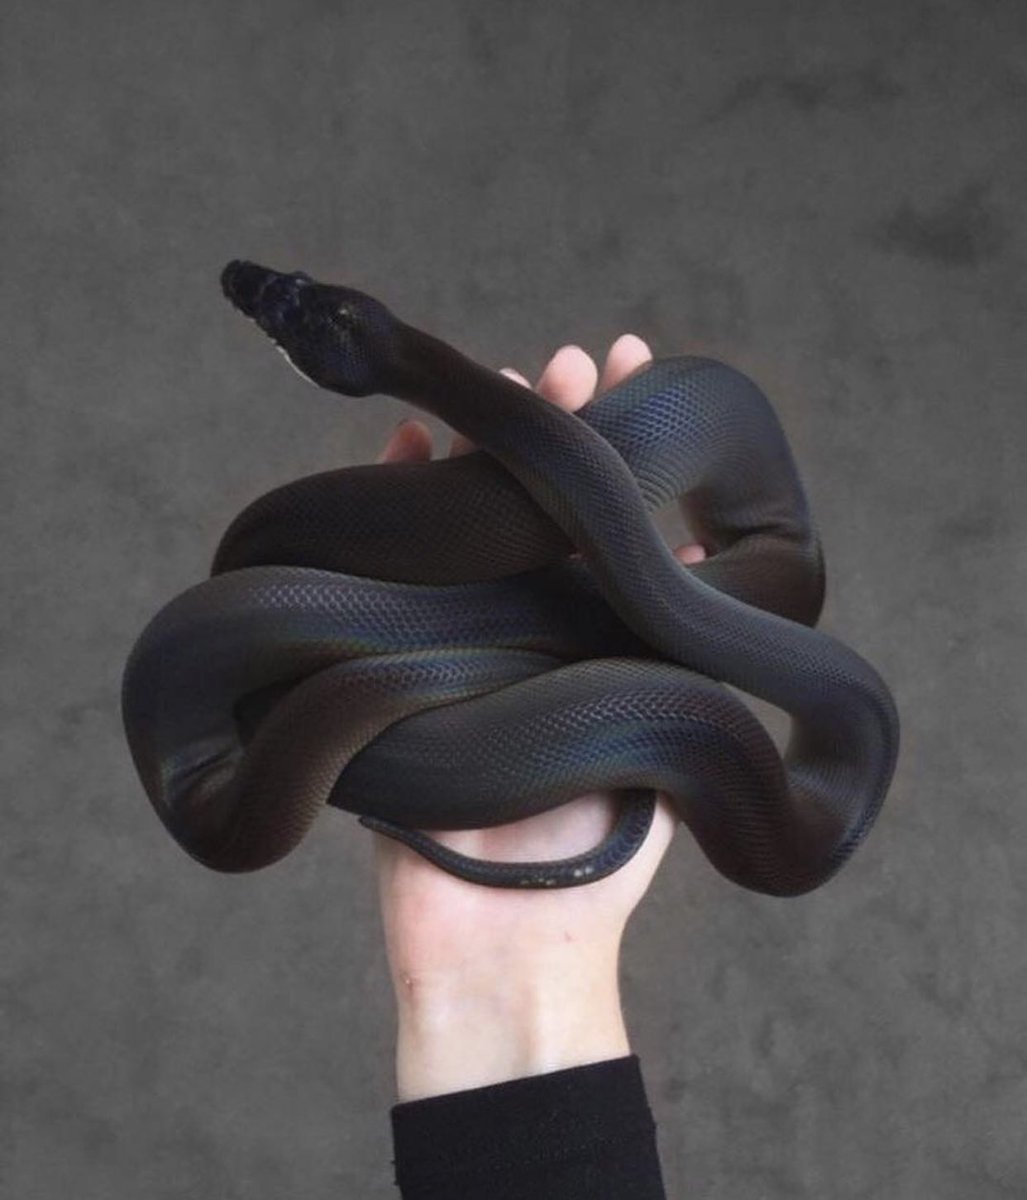 ФОТО: Змея на руке 1